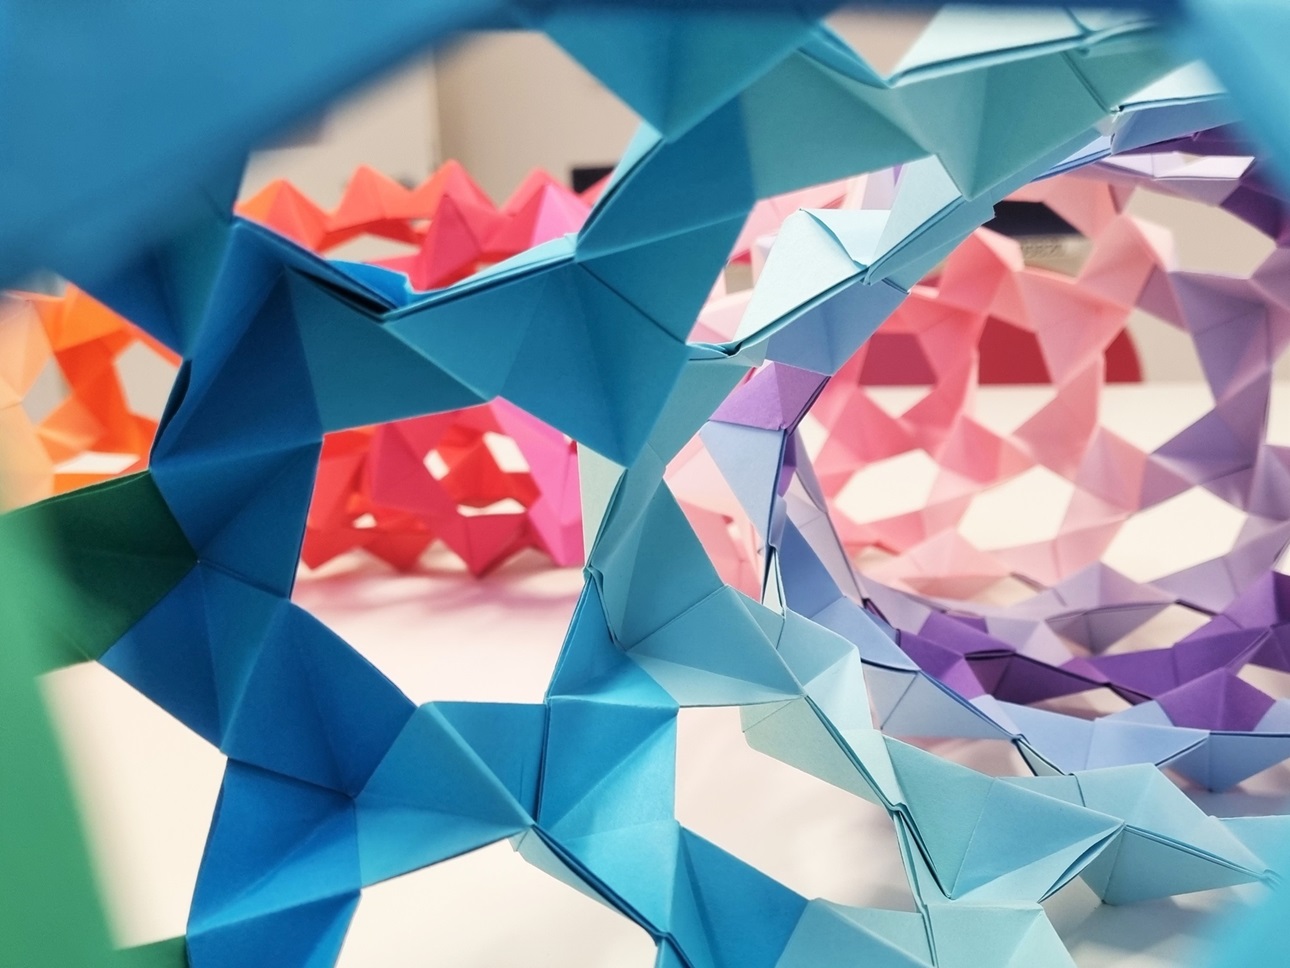 Blick in einen Origami-Torus mit regenbogenfarbenem Farbverlauf